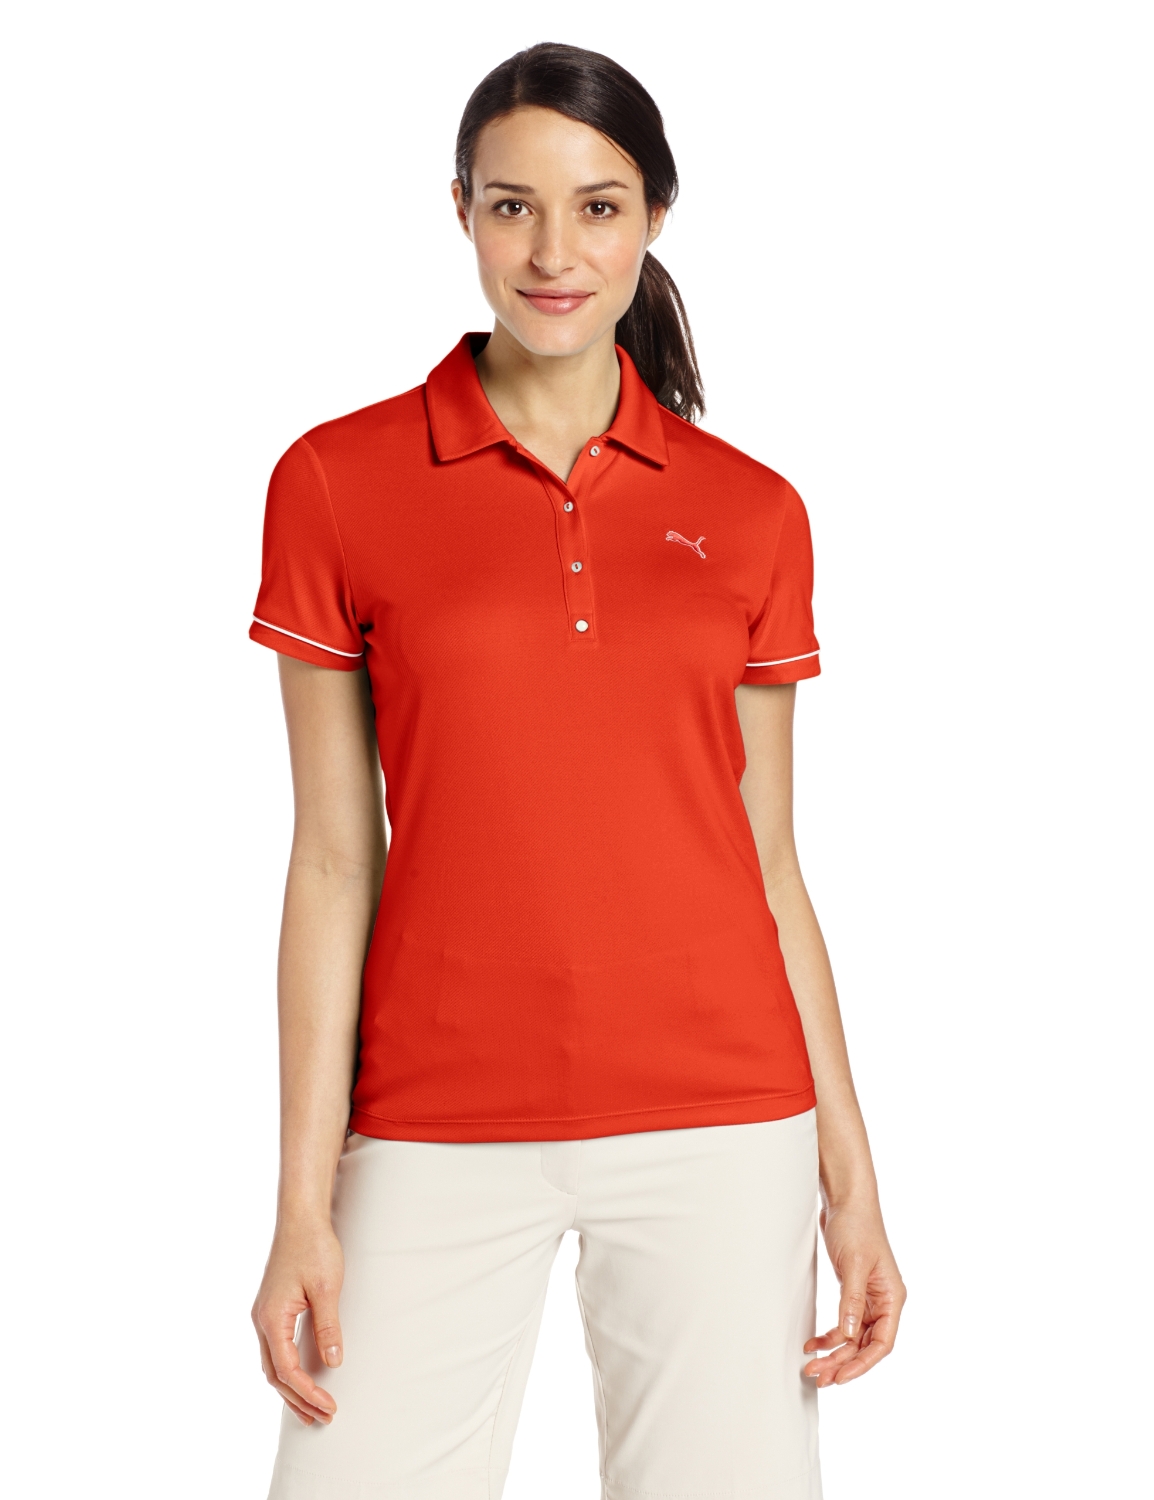 Puma Womens NA Tech Golf Polo Shirts